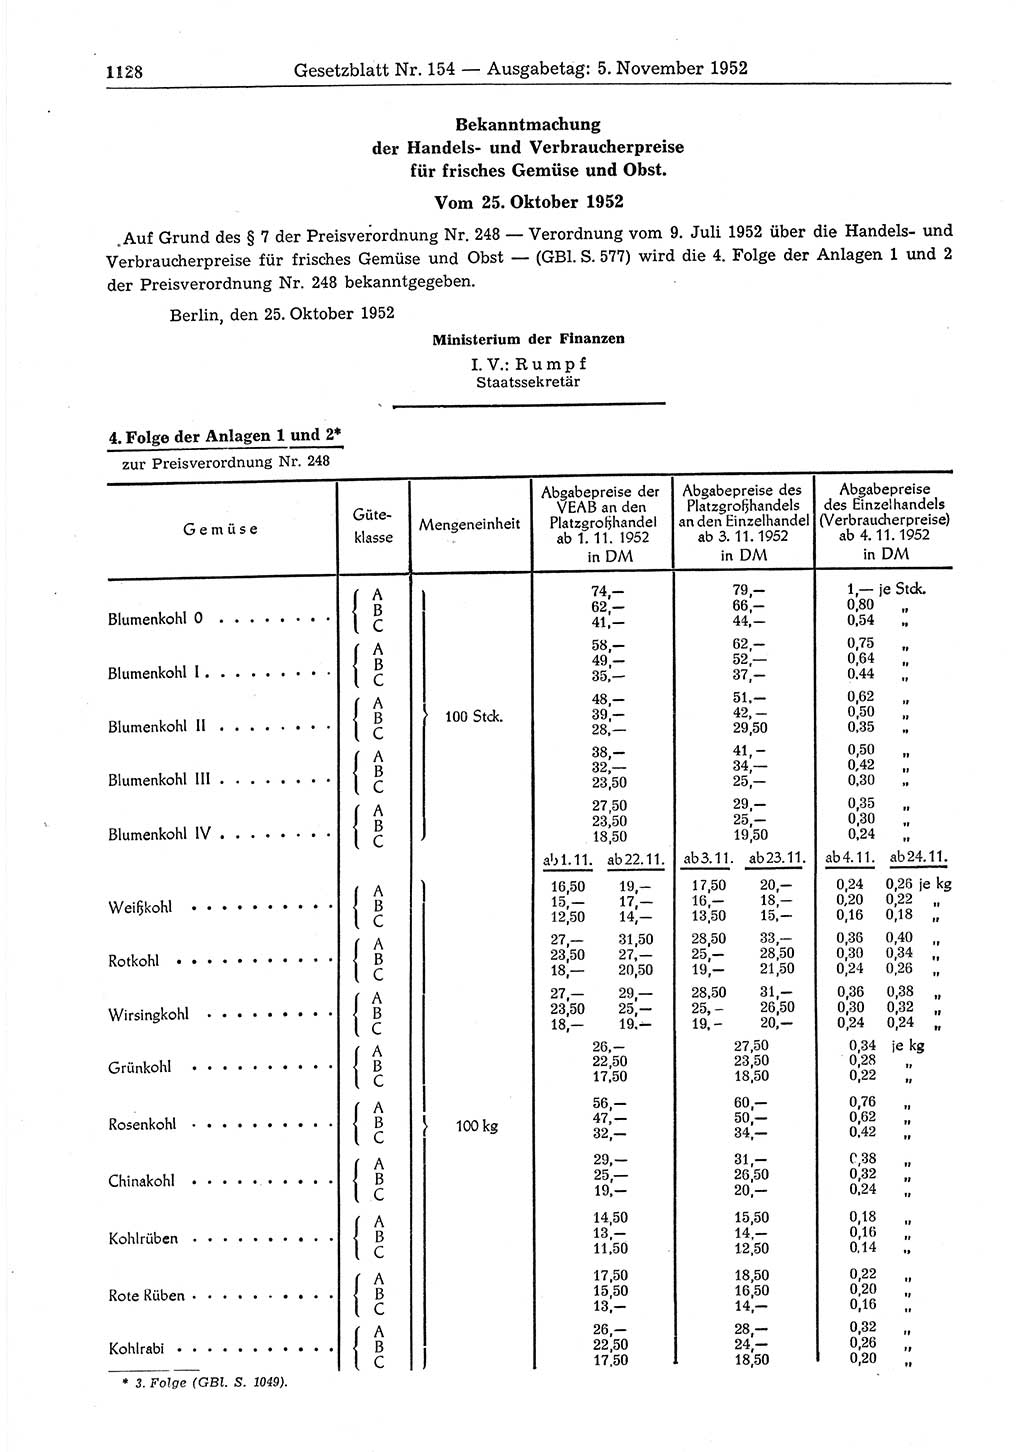 Gesetzblatt (GBl.) der Deutschen Demokratischen Republik (DDR) 1952, Seite 1128 (GBl. DDR 1952, S. 1128)